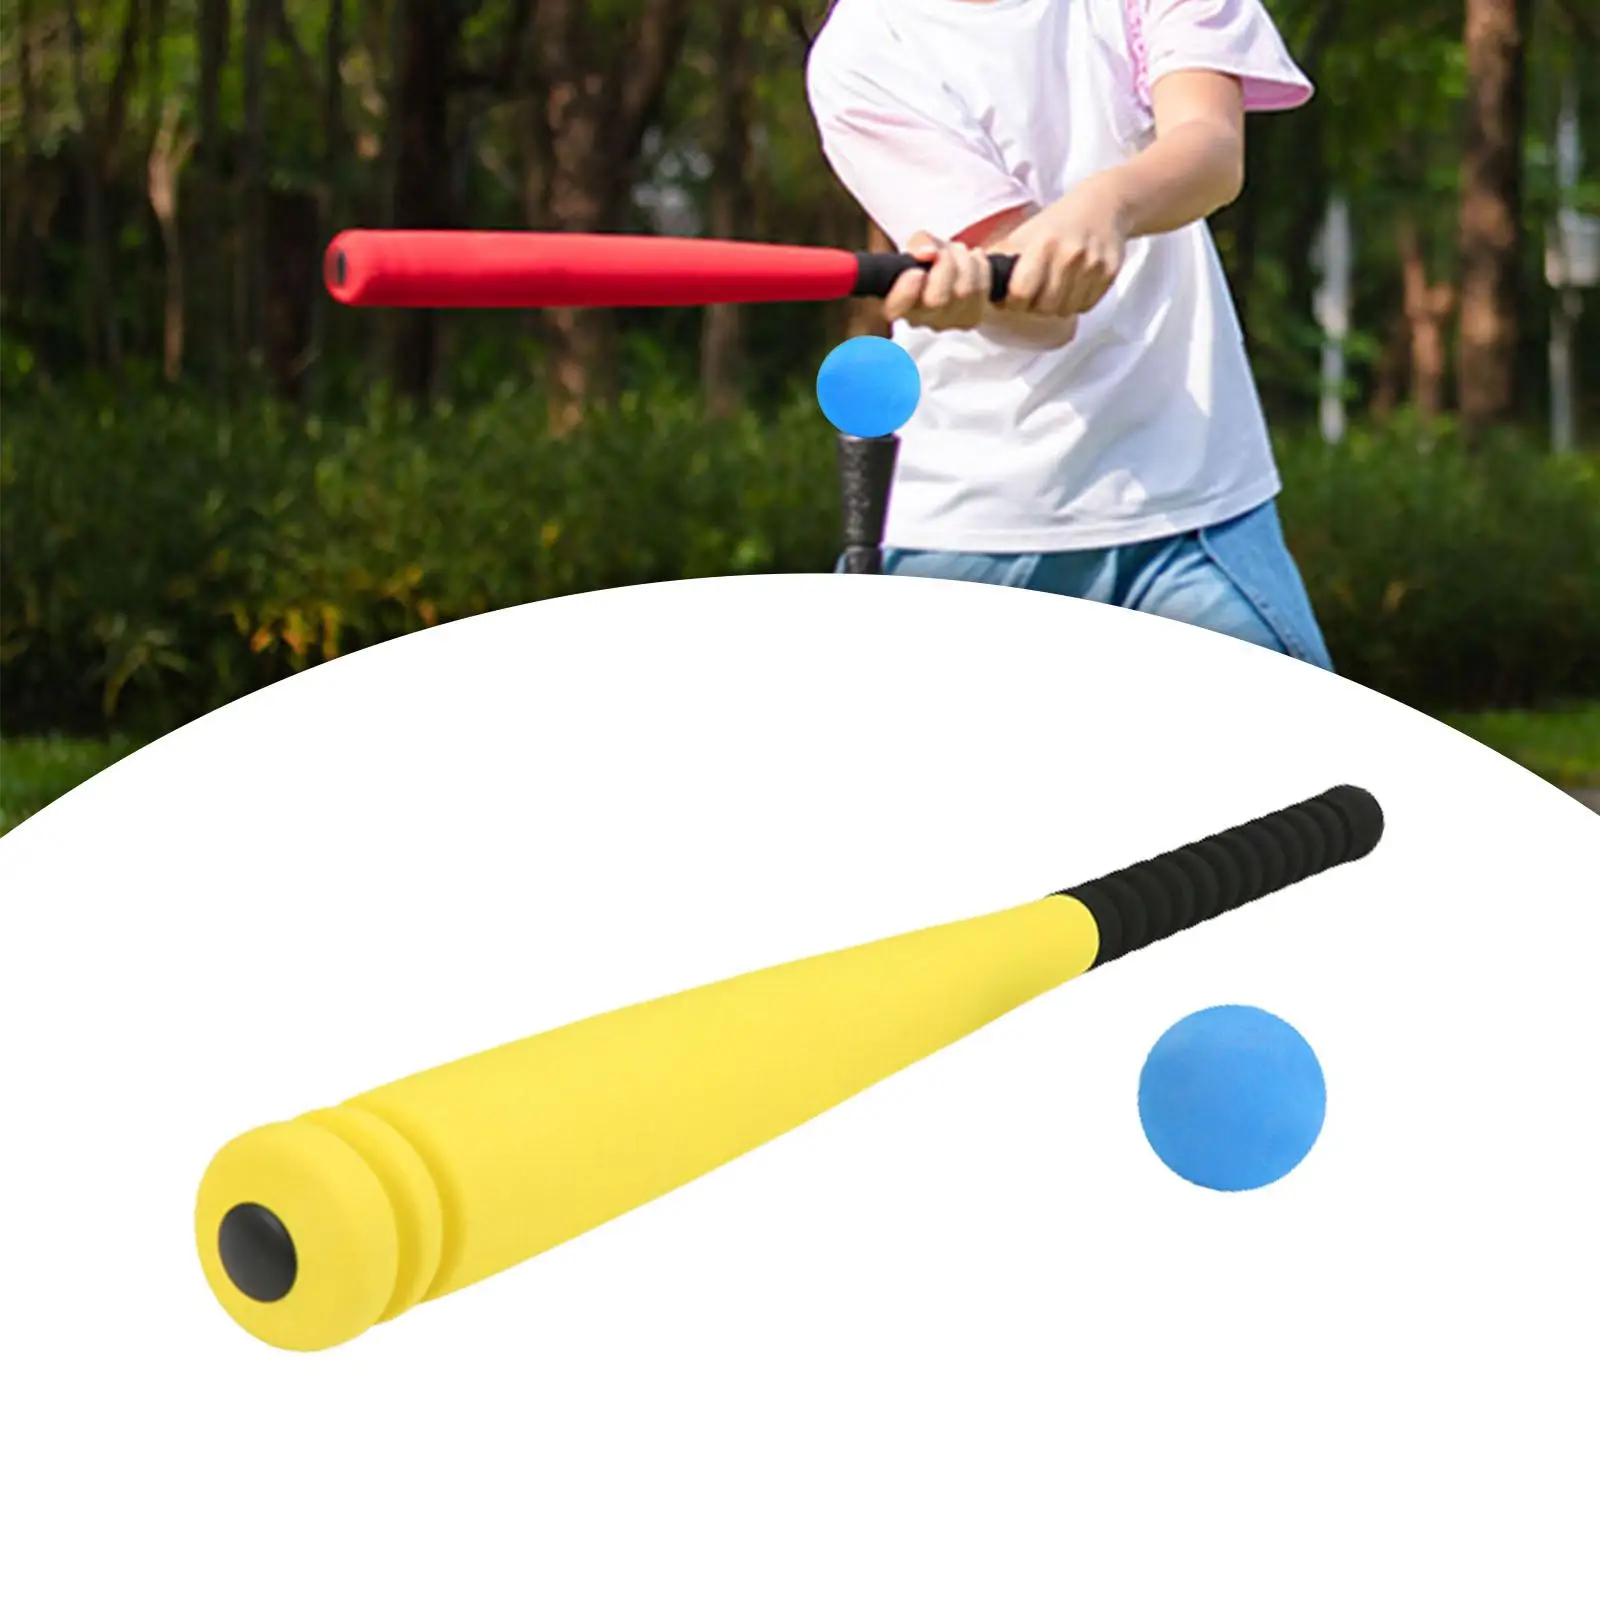 Sponge Baseball Bats Toy Children Gift Game Playset W/ Ball Kids Baseball Toy for Travel Learning Indoor Swing Batting Hitting